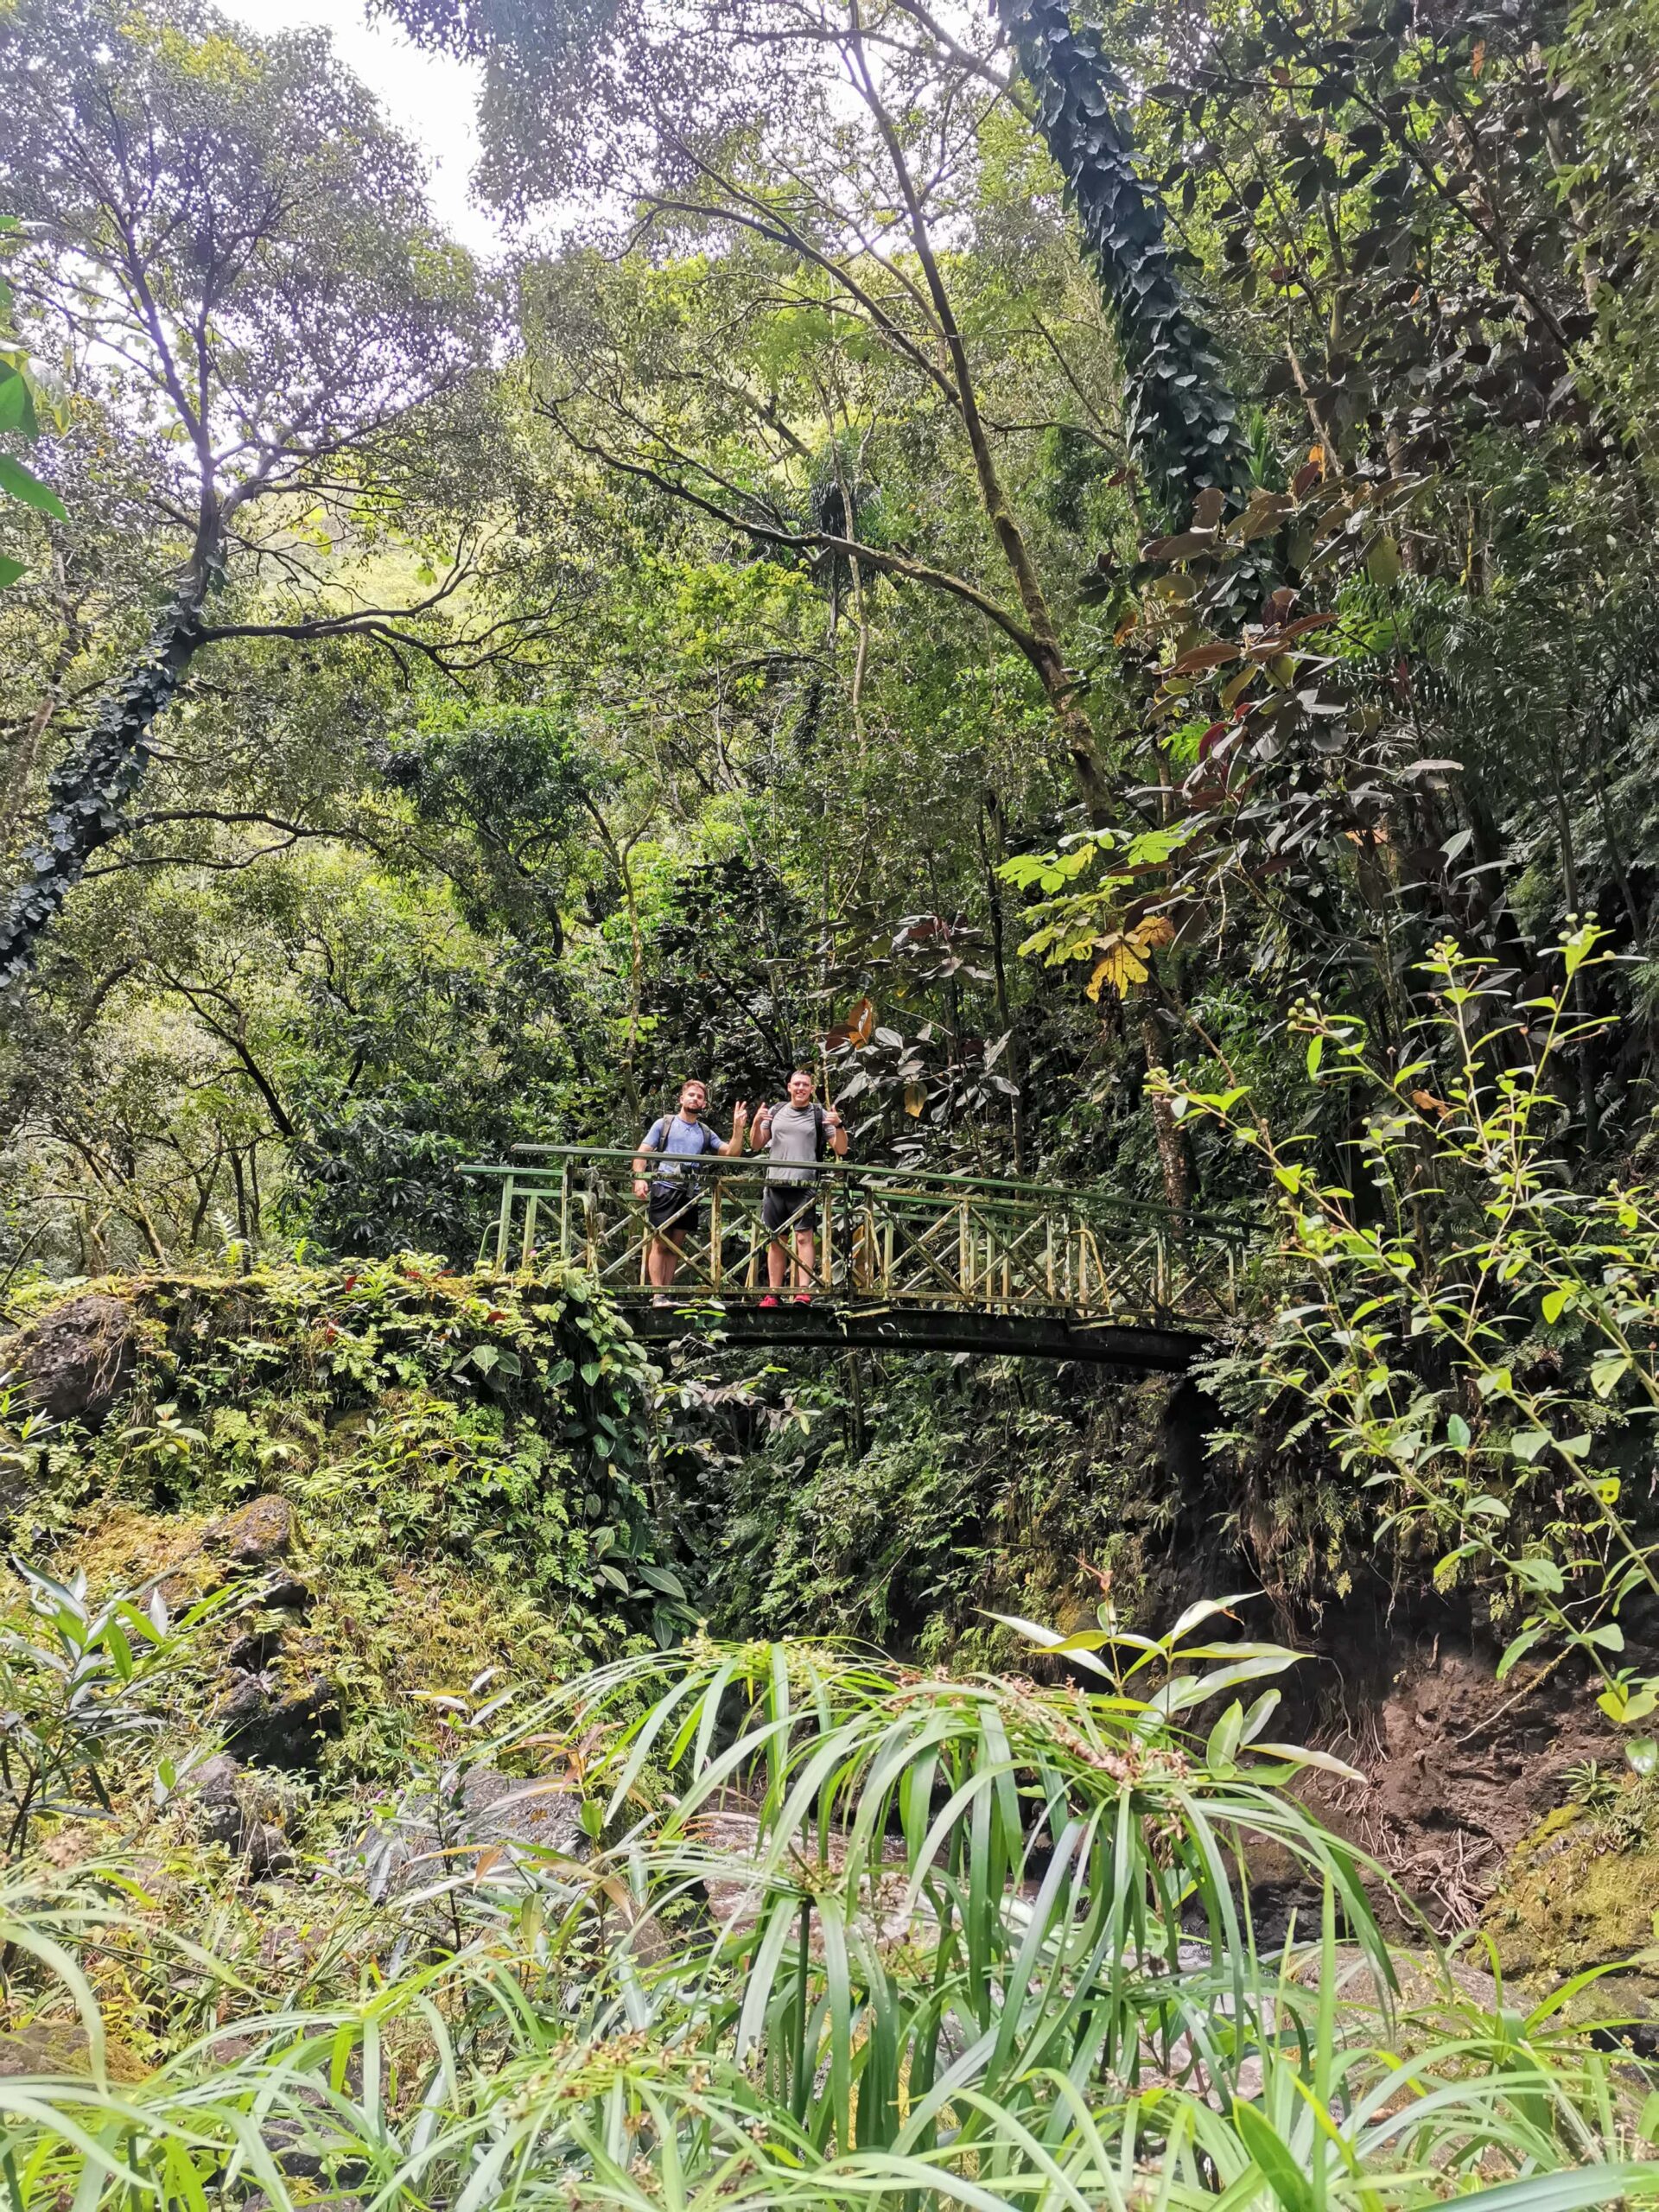 The Fashoda Bridge_Fautaua Valley_Hike Tahiti